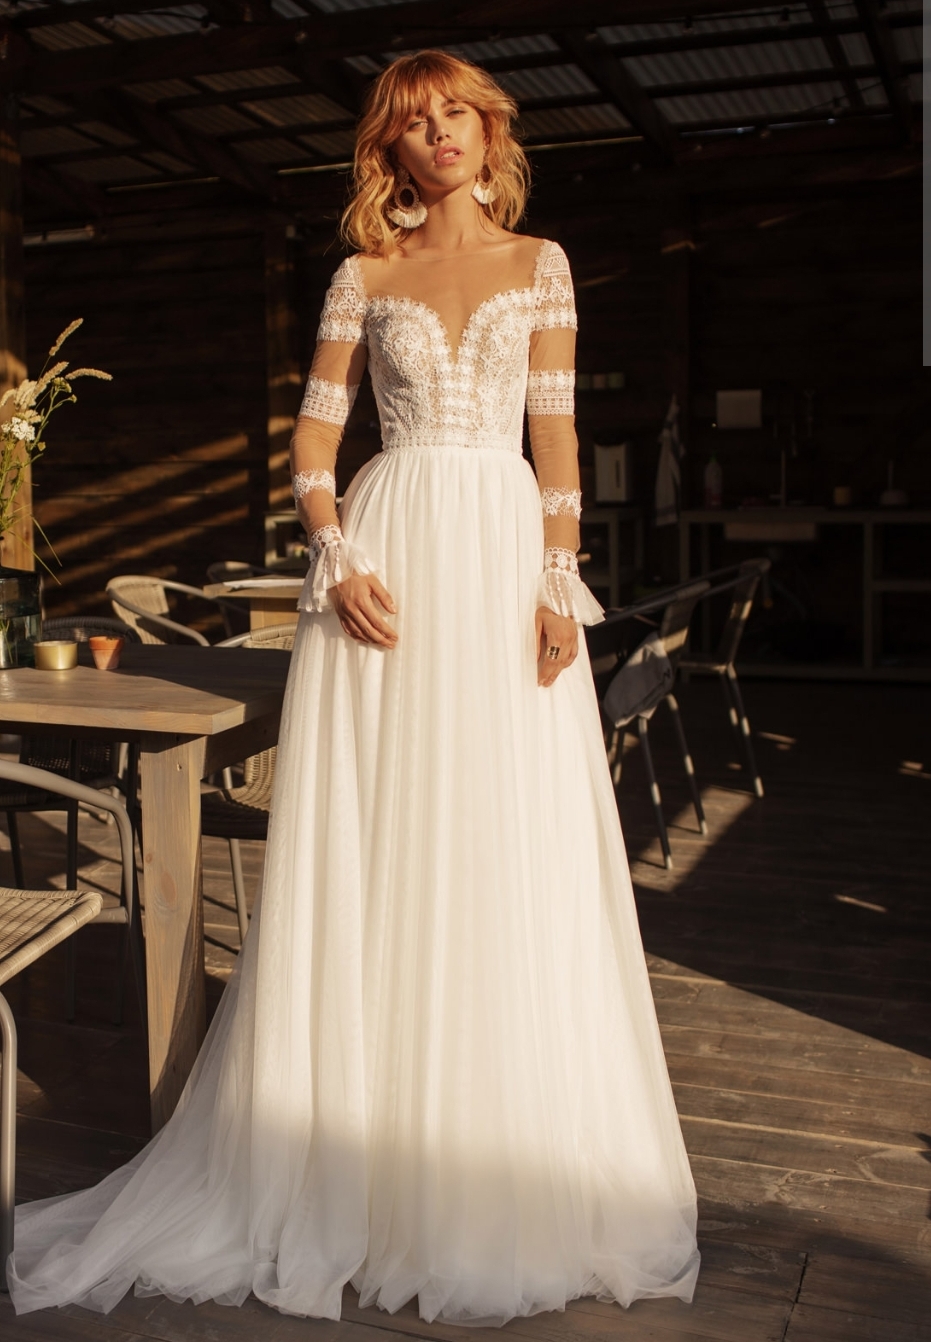 Небанально и стильно: 7 современных свадебных платьев